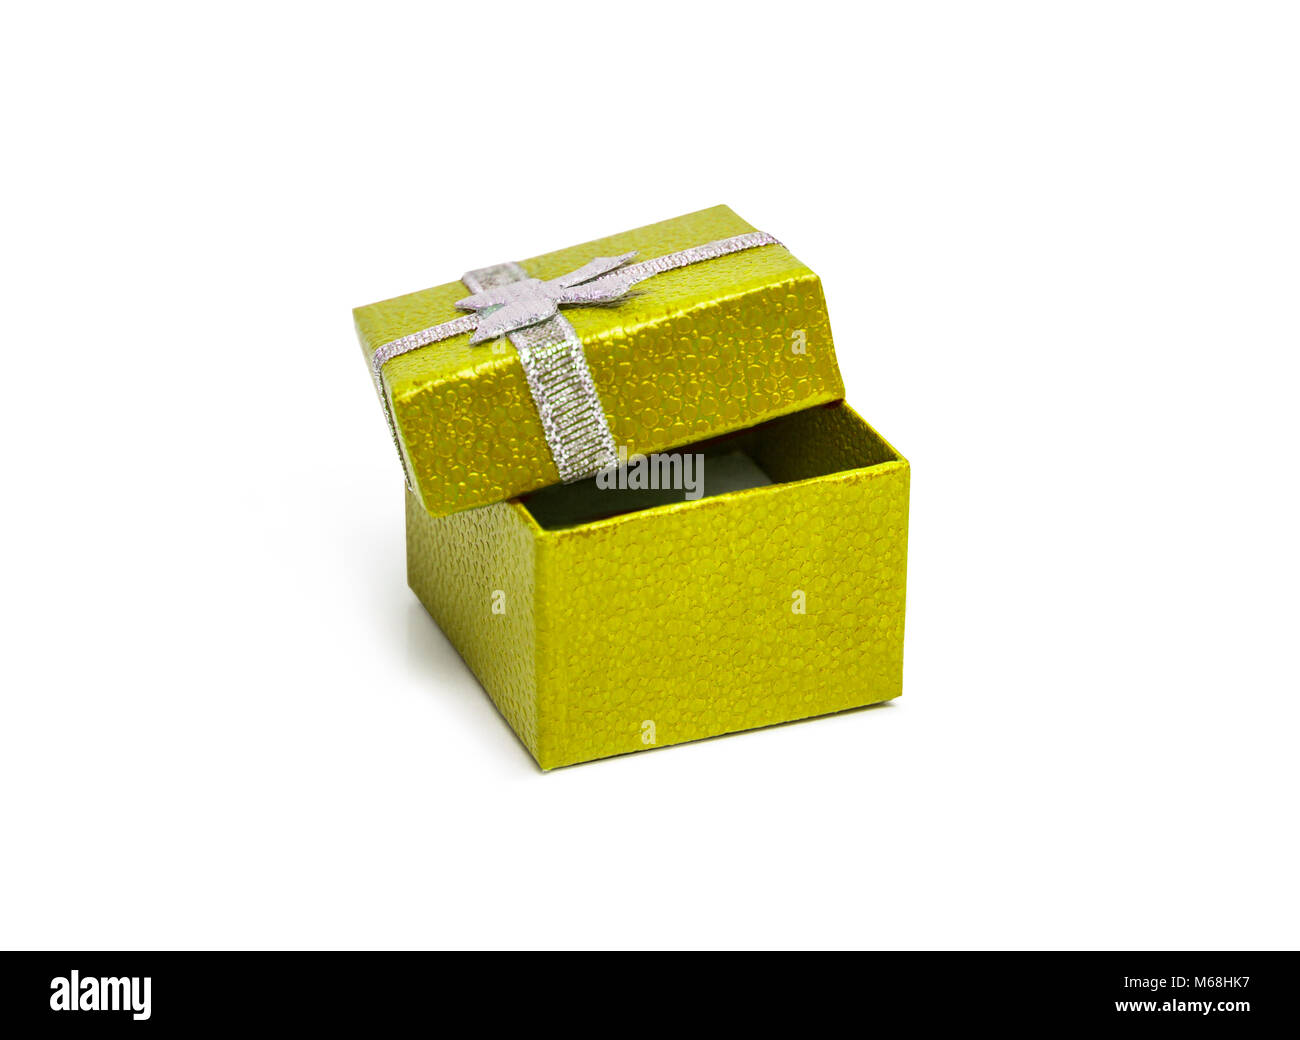 Aprire il colore giallo confezione regalo con nastro argentato isolati su sfondo bianco Foto Stock